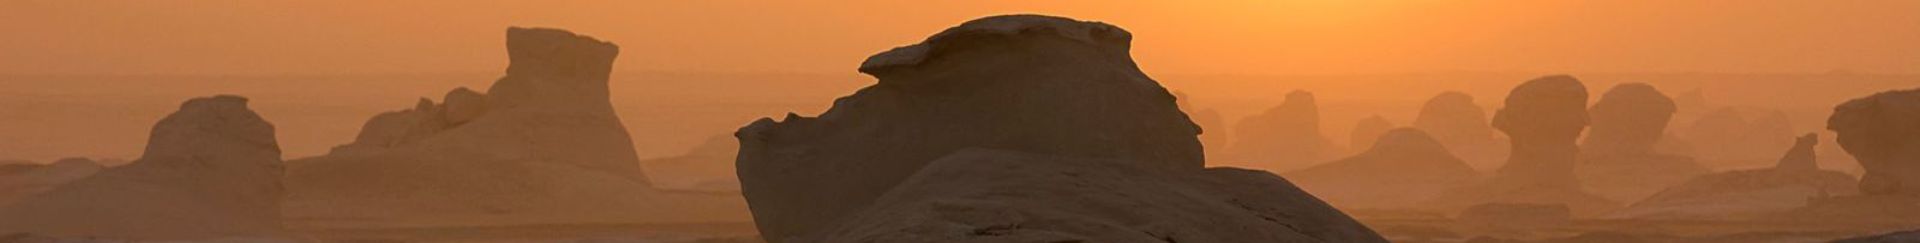 Uitzicht over de heuvels en rotsformaties van de Witte Woestijn in Egypte tijdens de zonsondergang